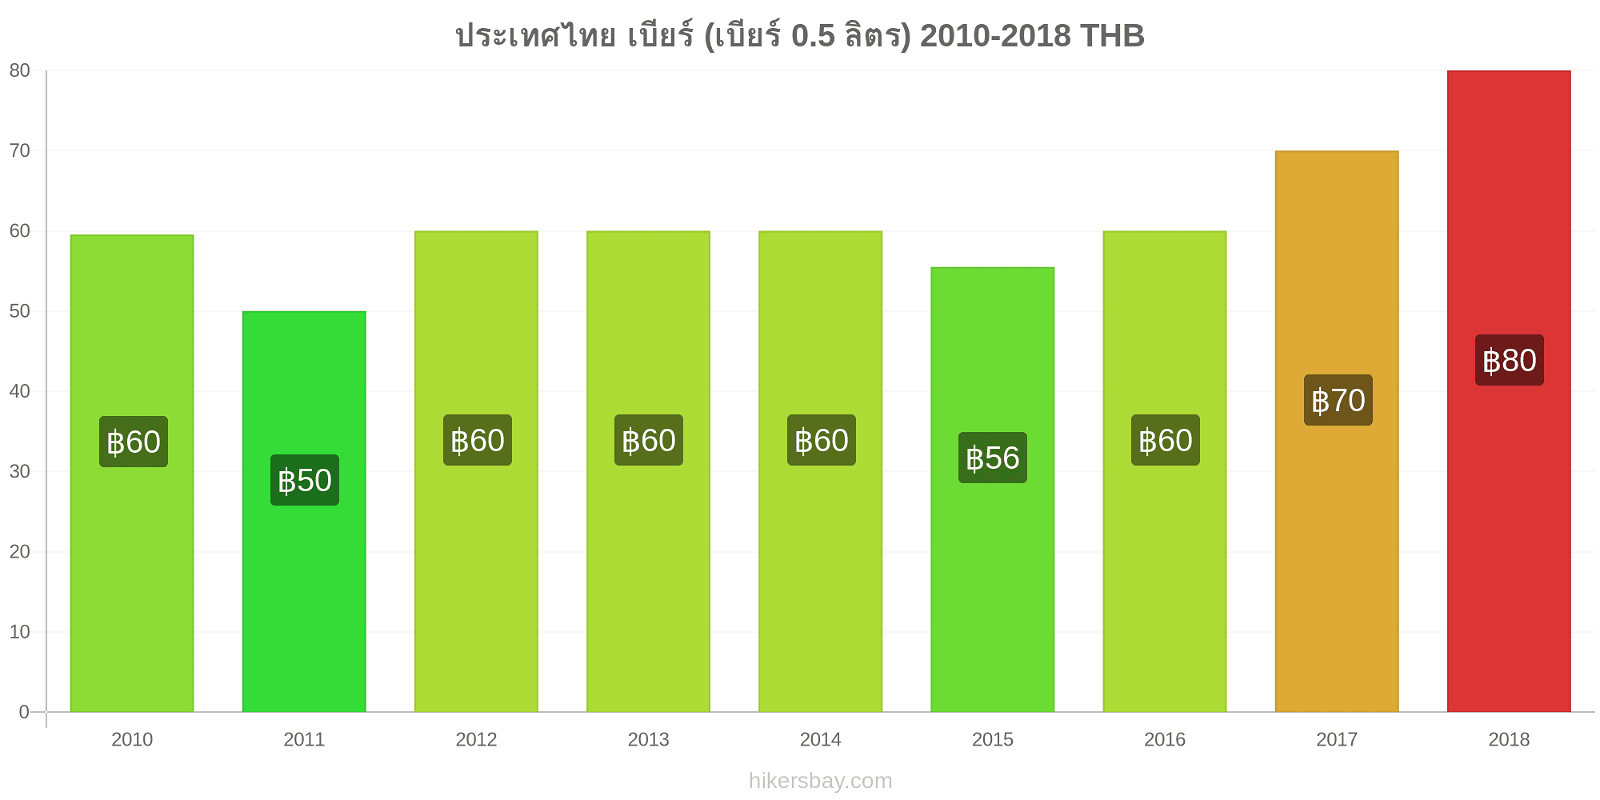 ประเทศไทย การเปลี่ยนแปลงราคา เบียร์สด (0.5 ลิตร) hikersbay.com